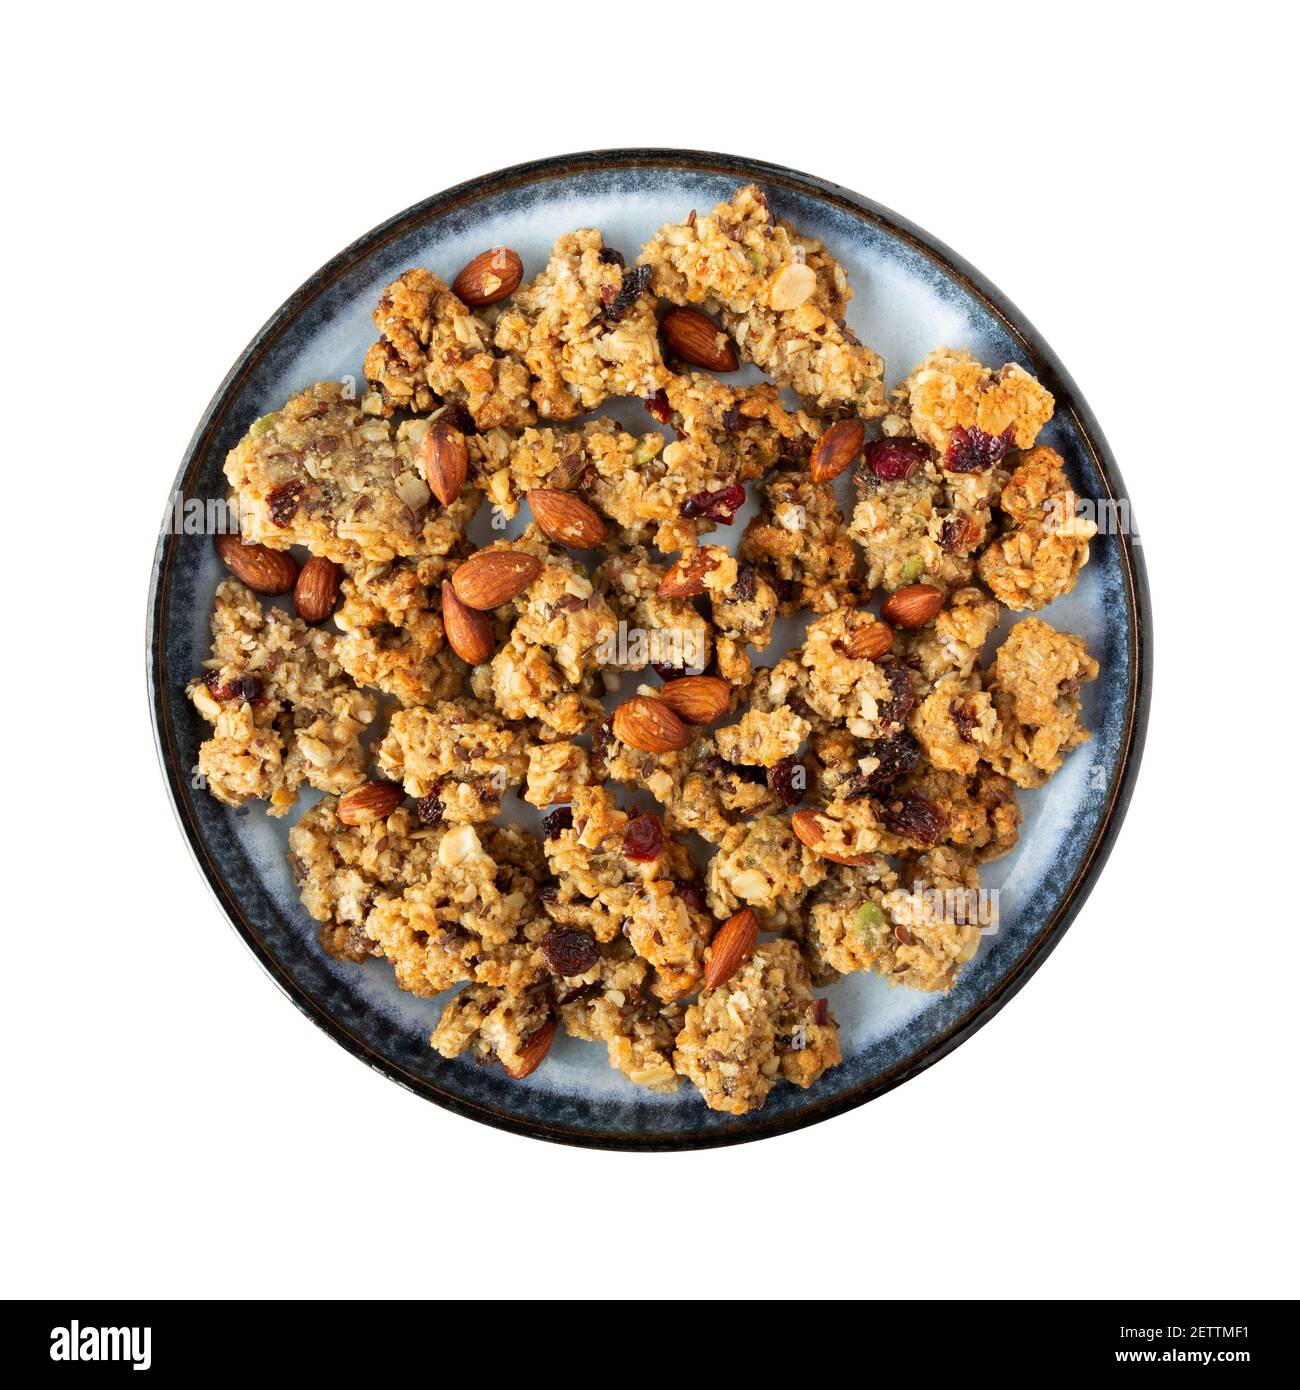 Vue de dessus d'un granola de grains entiers avec des fruits et des noix sur une assiette bleue sur un fond blanc. Banque D'Images